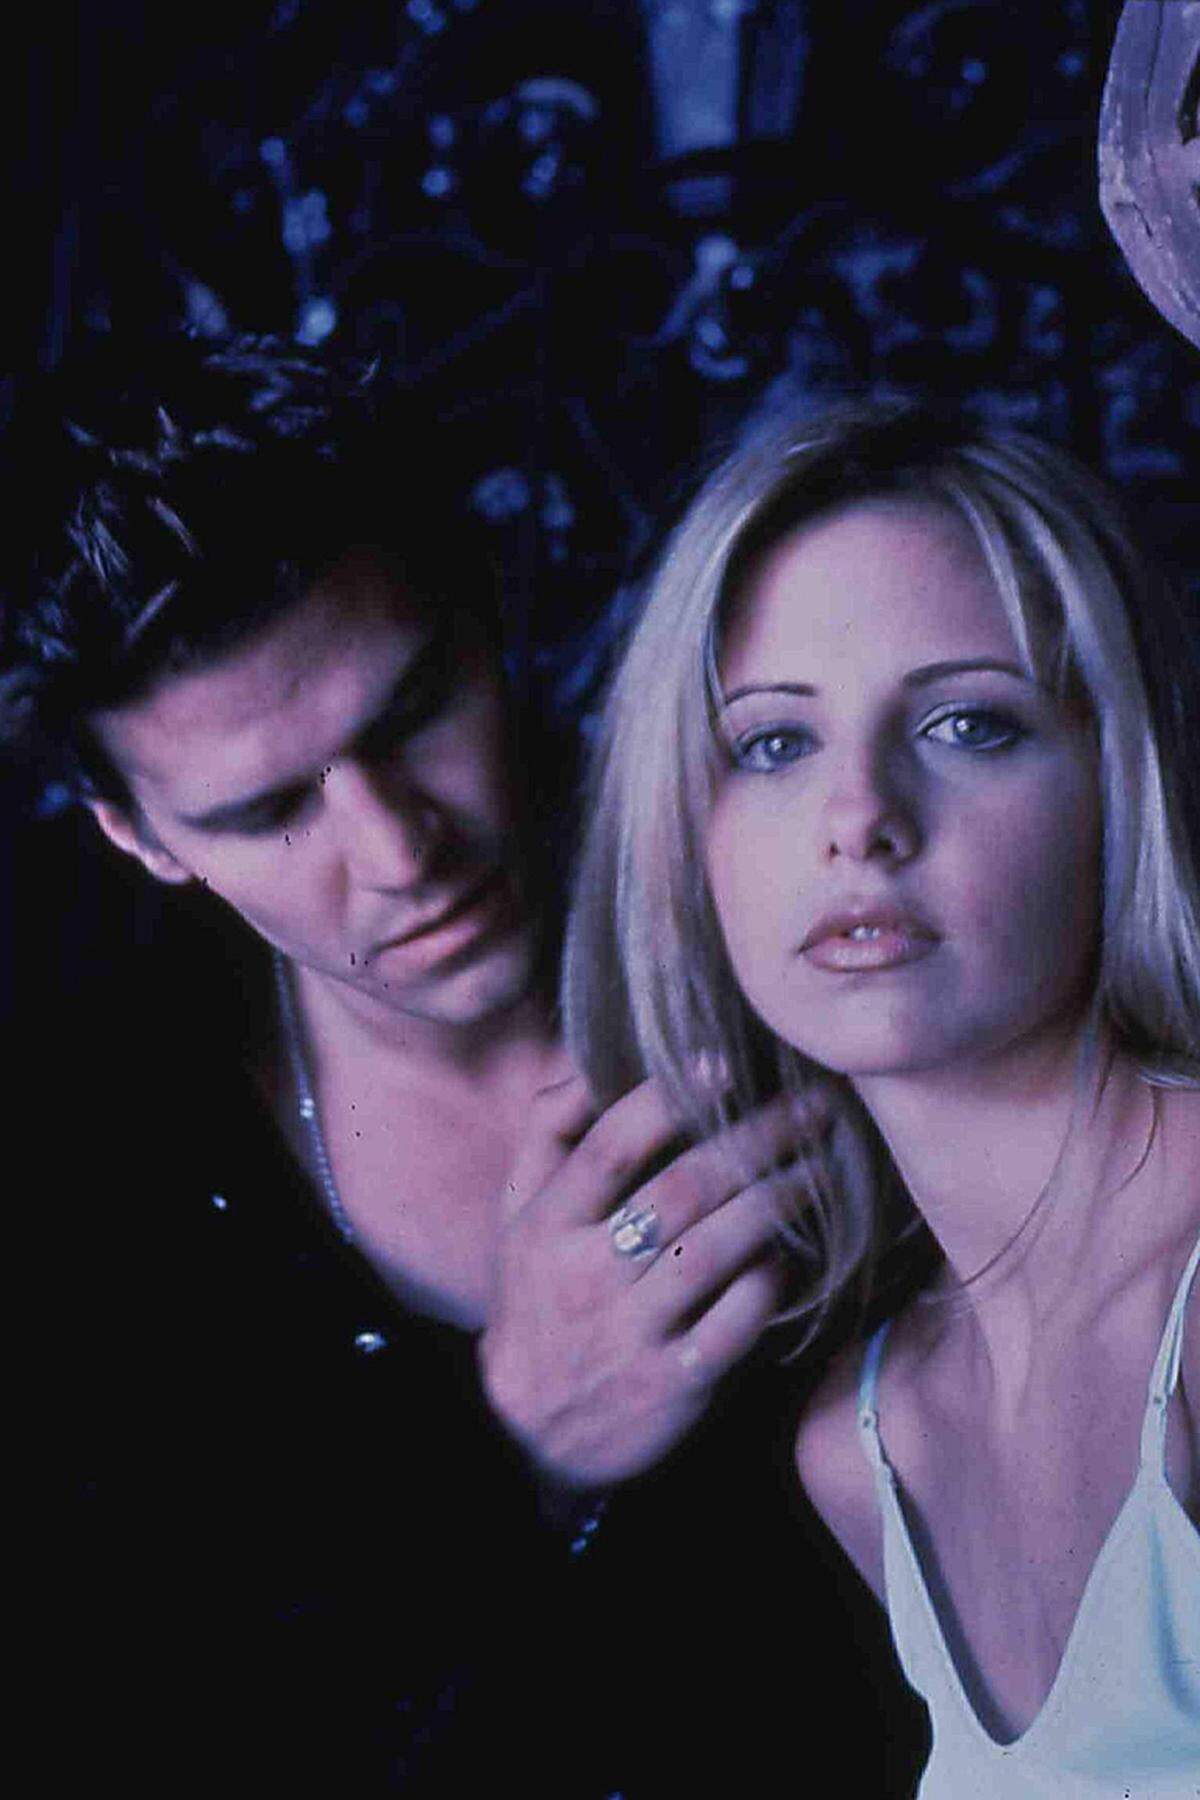 von 1997 bis 2003 | Sieben Staffeln Bevor Joss Whedon bei der Comic-Verfilmung "Avengers" Regie führen durfte, schuf er die Serie "Buffy", die im Deutschen den wenig passenden Untertitel "Im Bann der Dämonen" trägt. Darin drehte er Klischees clever um: das blonde Mädchen ist hier nicht wehrlos, sondern - ganz im Gegenteil - eine starke Kämpferin gegen Vampire und andere Bösewichte. Die postmoderne Serie, die sich auch durch ihren humorvollen Dialogen abhob, fand viele Fans unter Wissenschaftlern (es gibt tatsächlich "Buffy Studies"), nicht aber unter der Emmy-Jury.